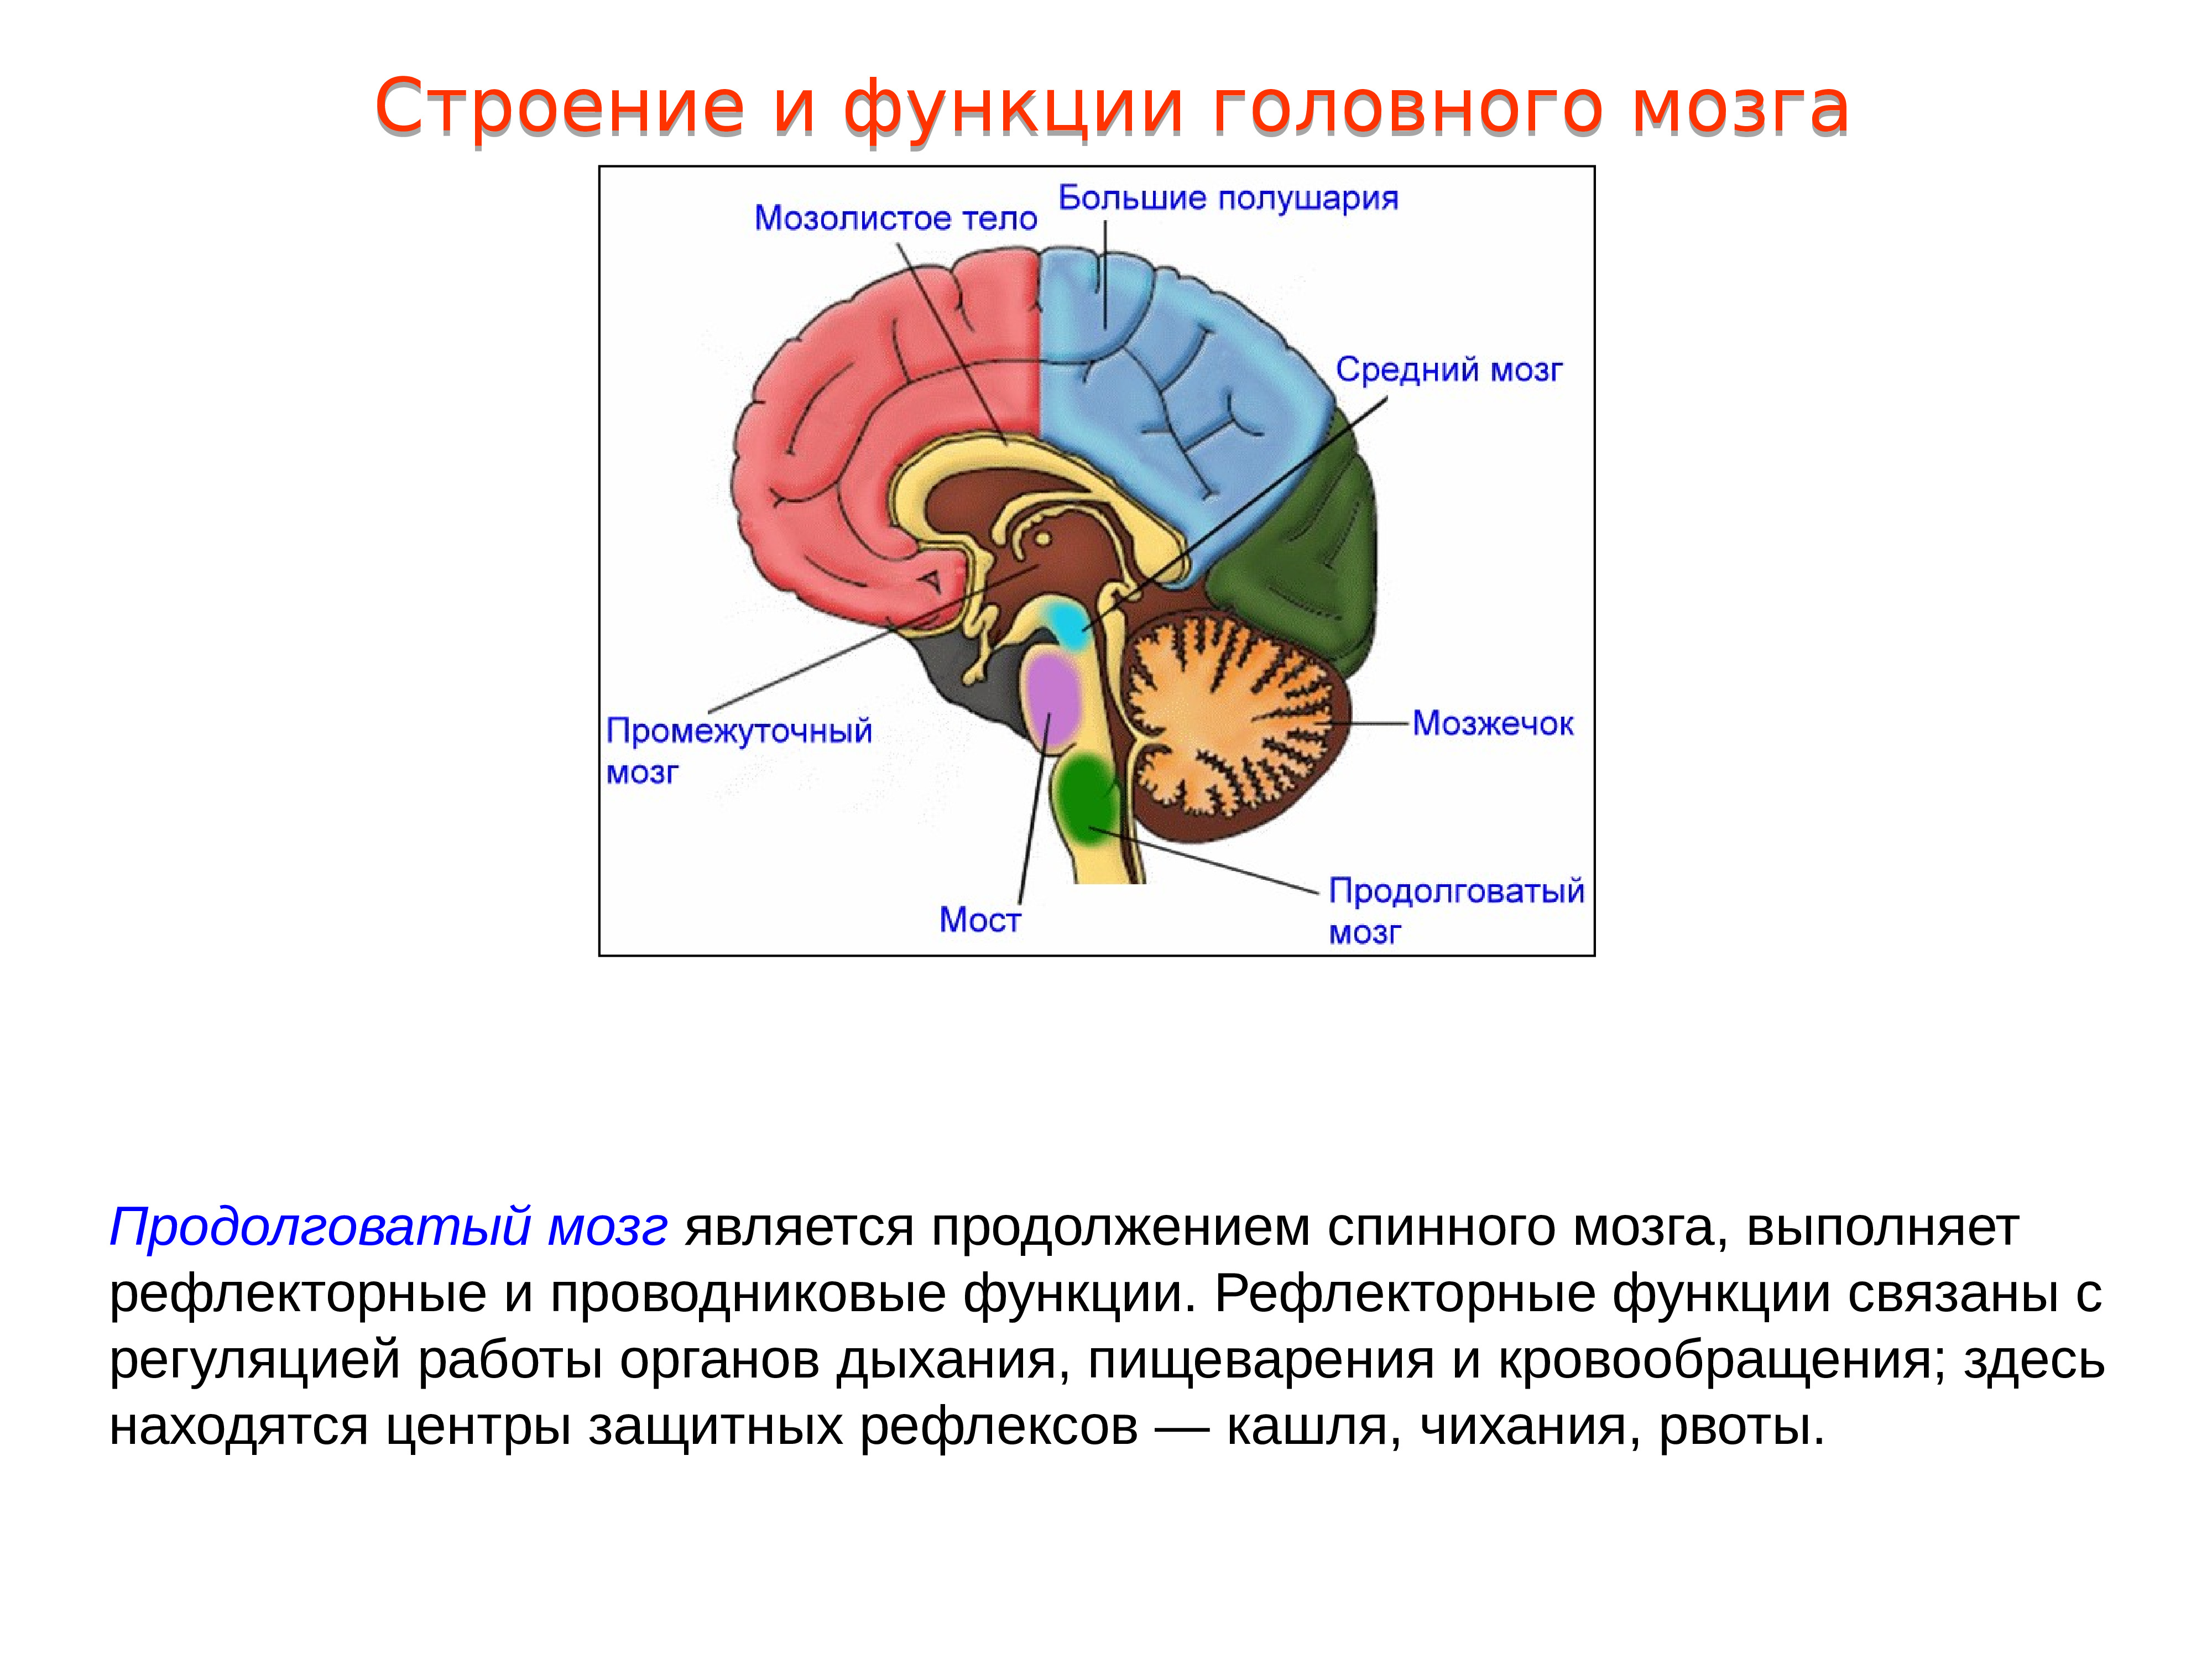 Особенности головного мозга ребенка. Структура головного мозг задний мозг. Проводниковая функция мозжечка. Головной мозг, отделы. Строение и функции продолговатого мозга. 1. Промежуточный мозг: строение, функции.